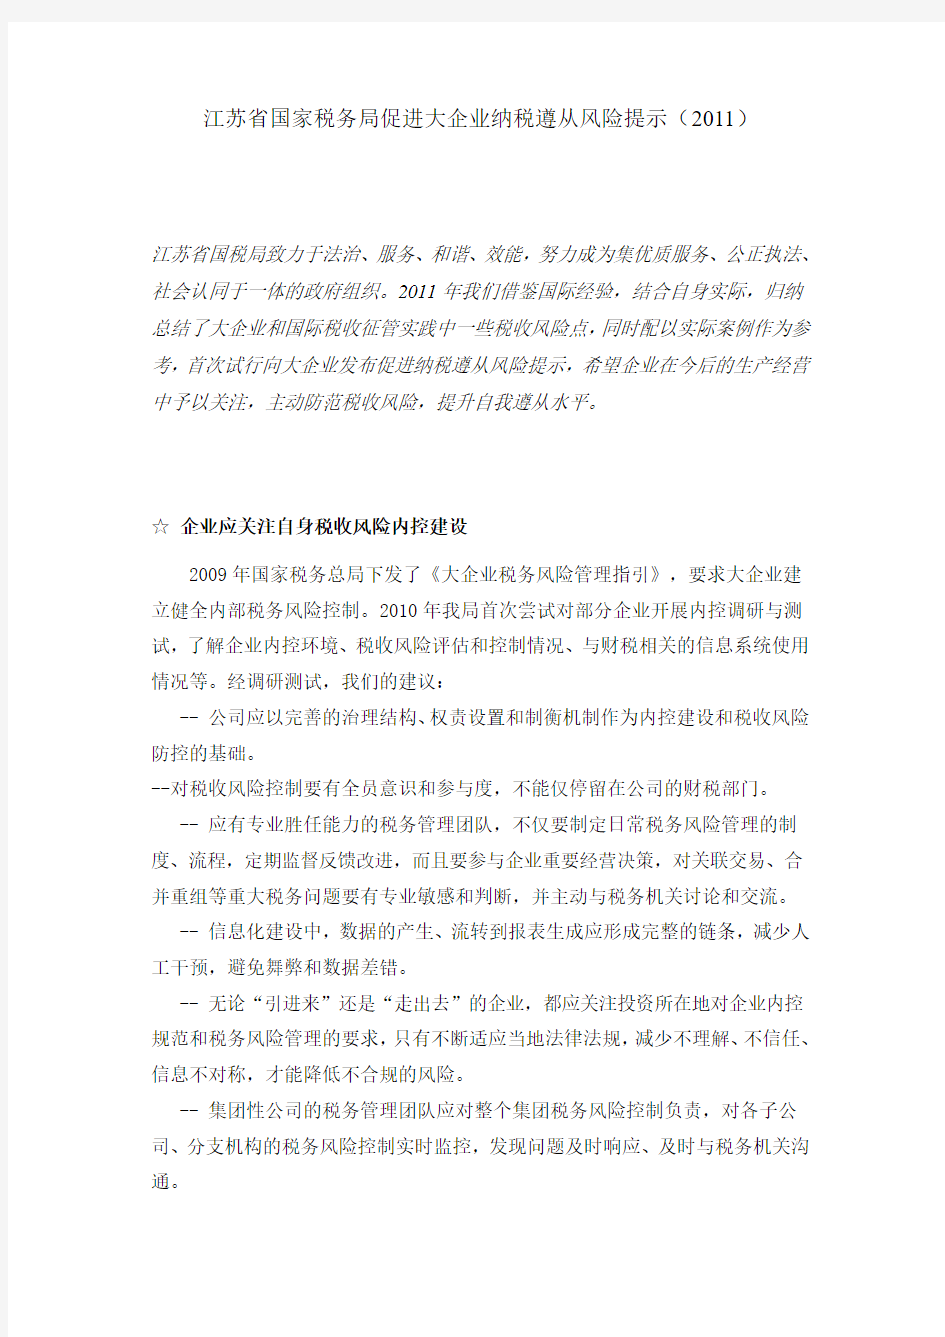 江苏省国家税务局促进大企业纳税遵从风险提示(2011)